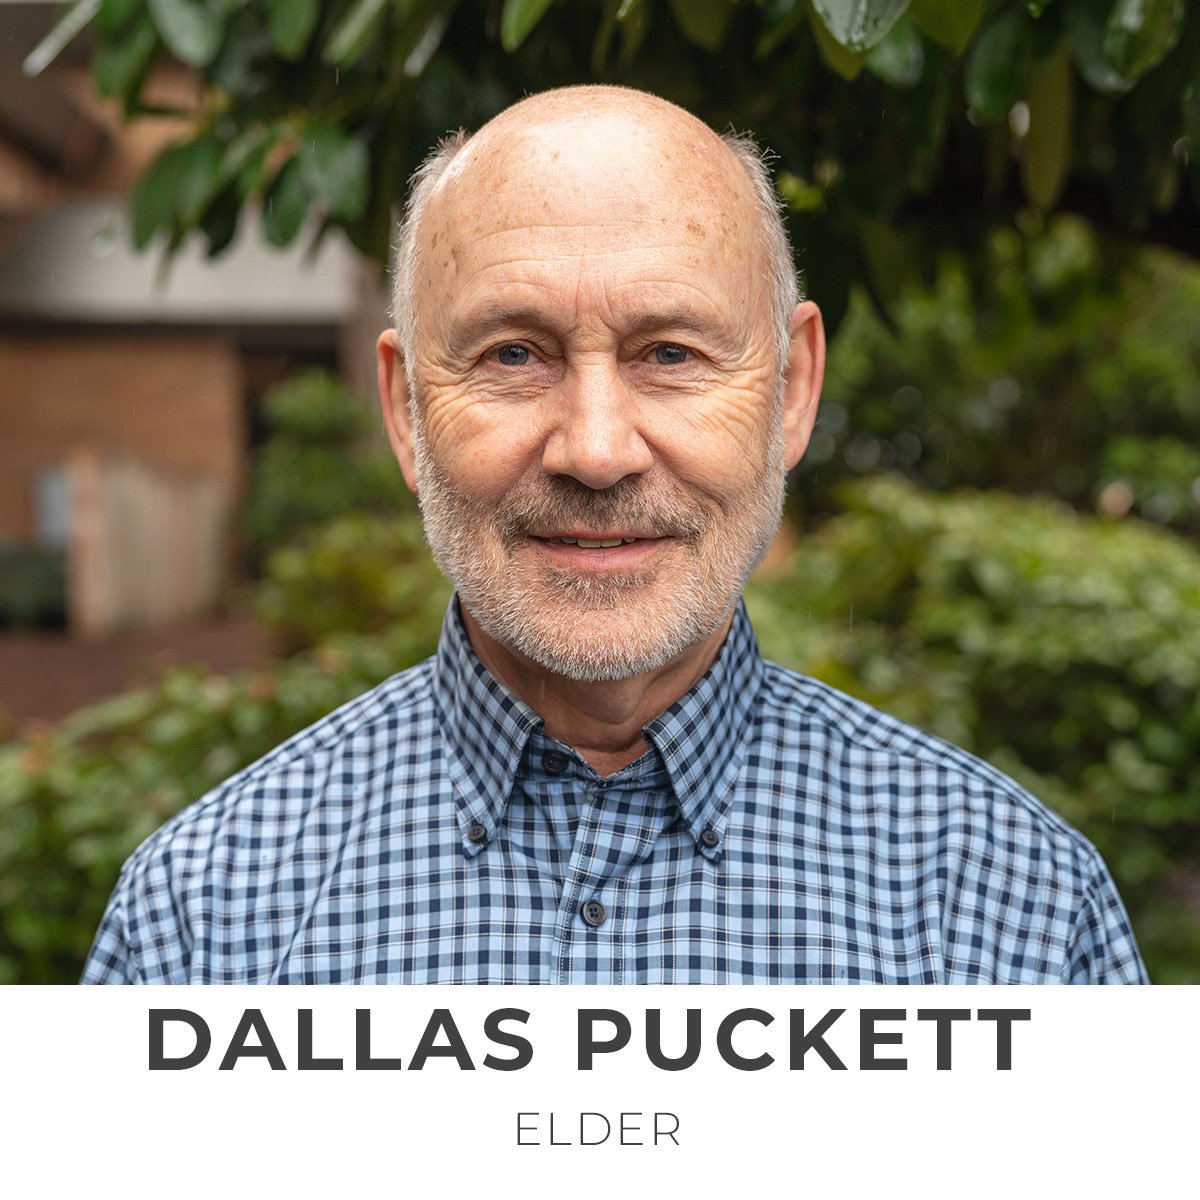 Dallas Puckett, Elder